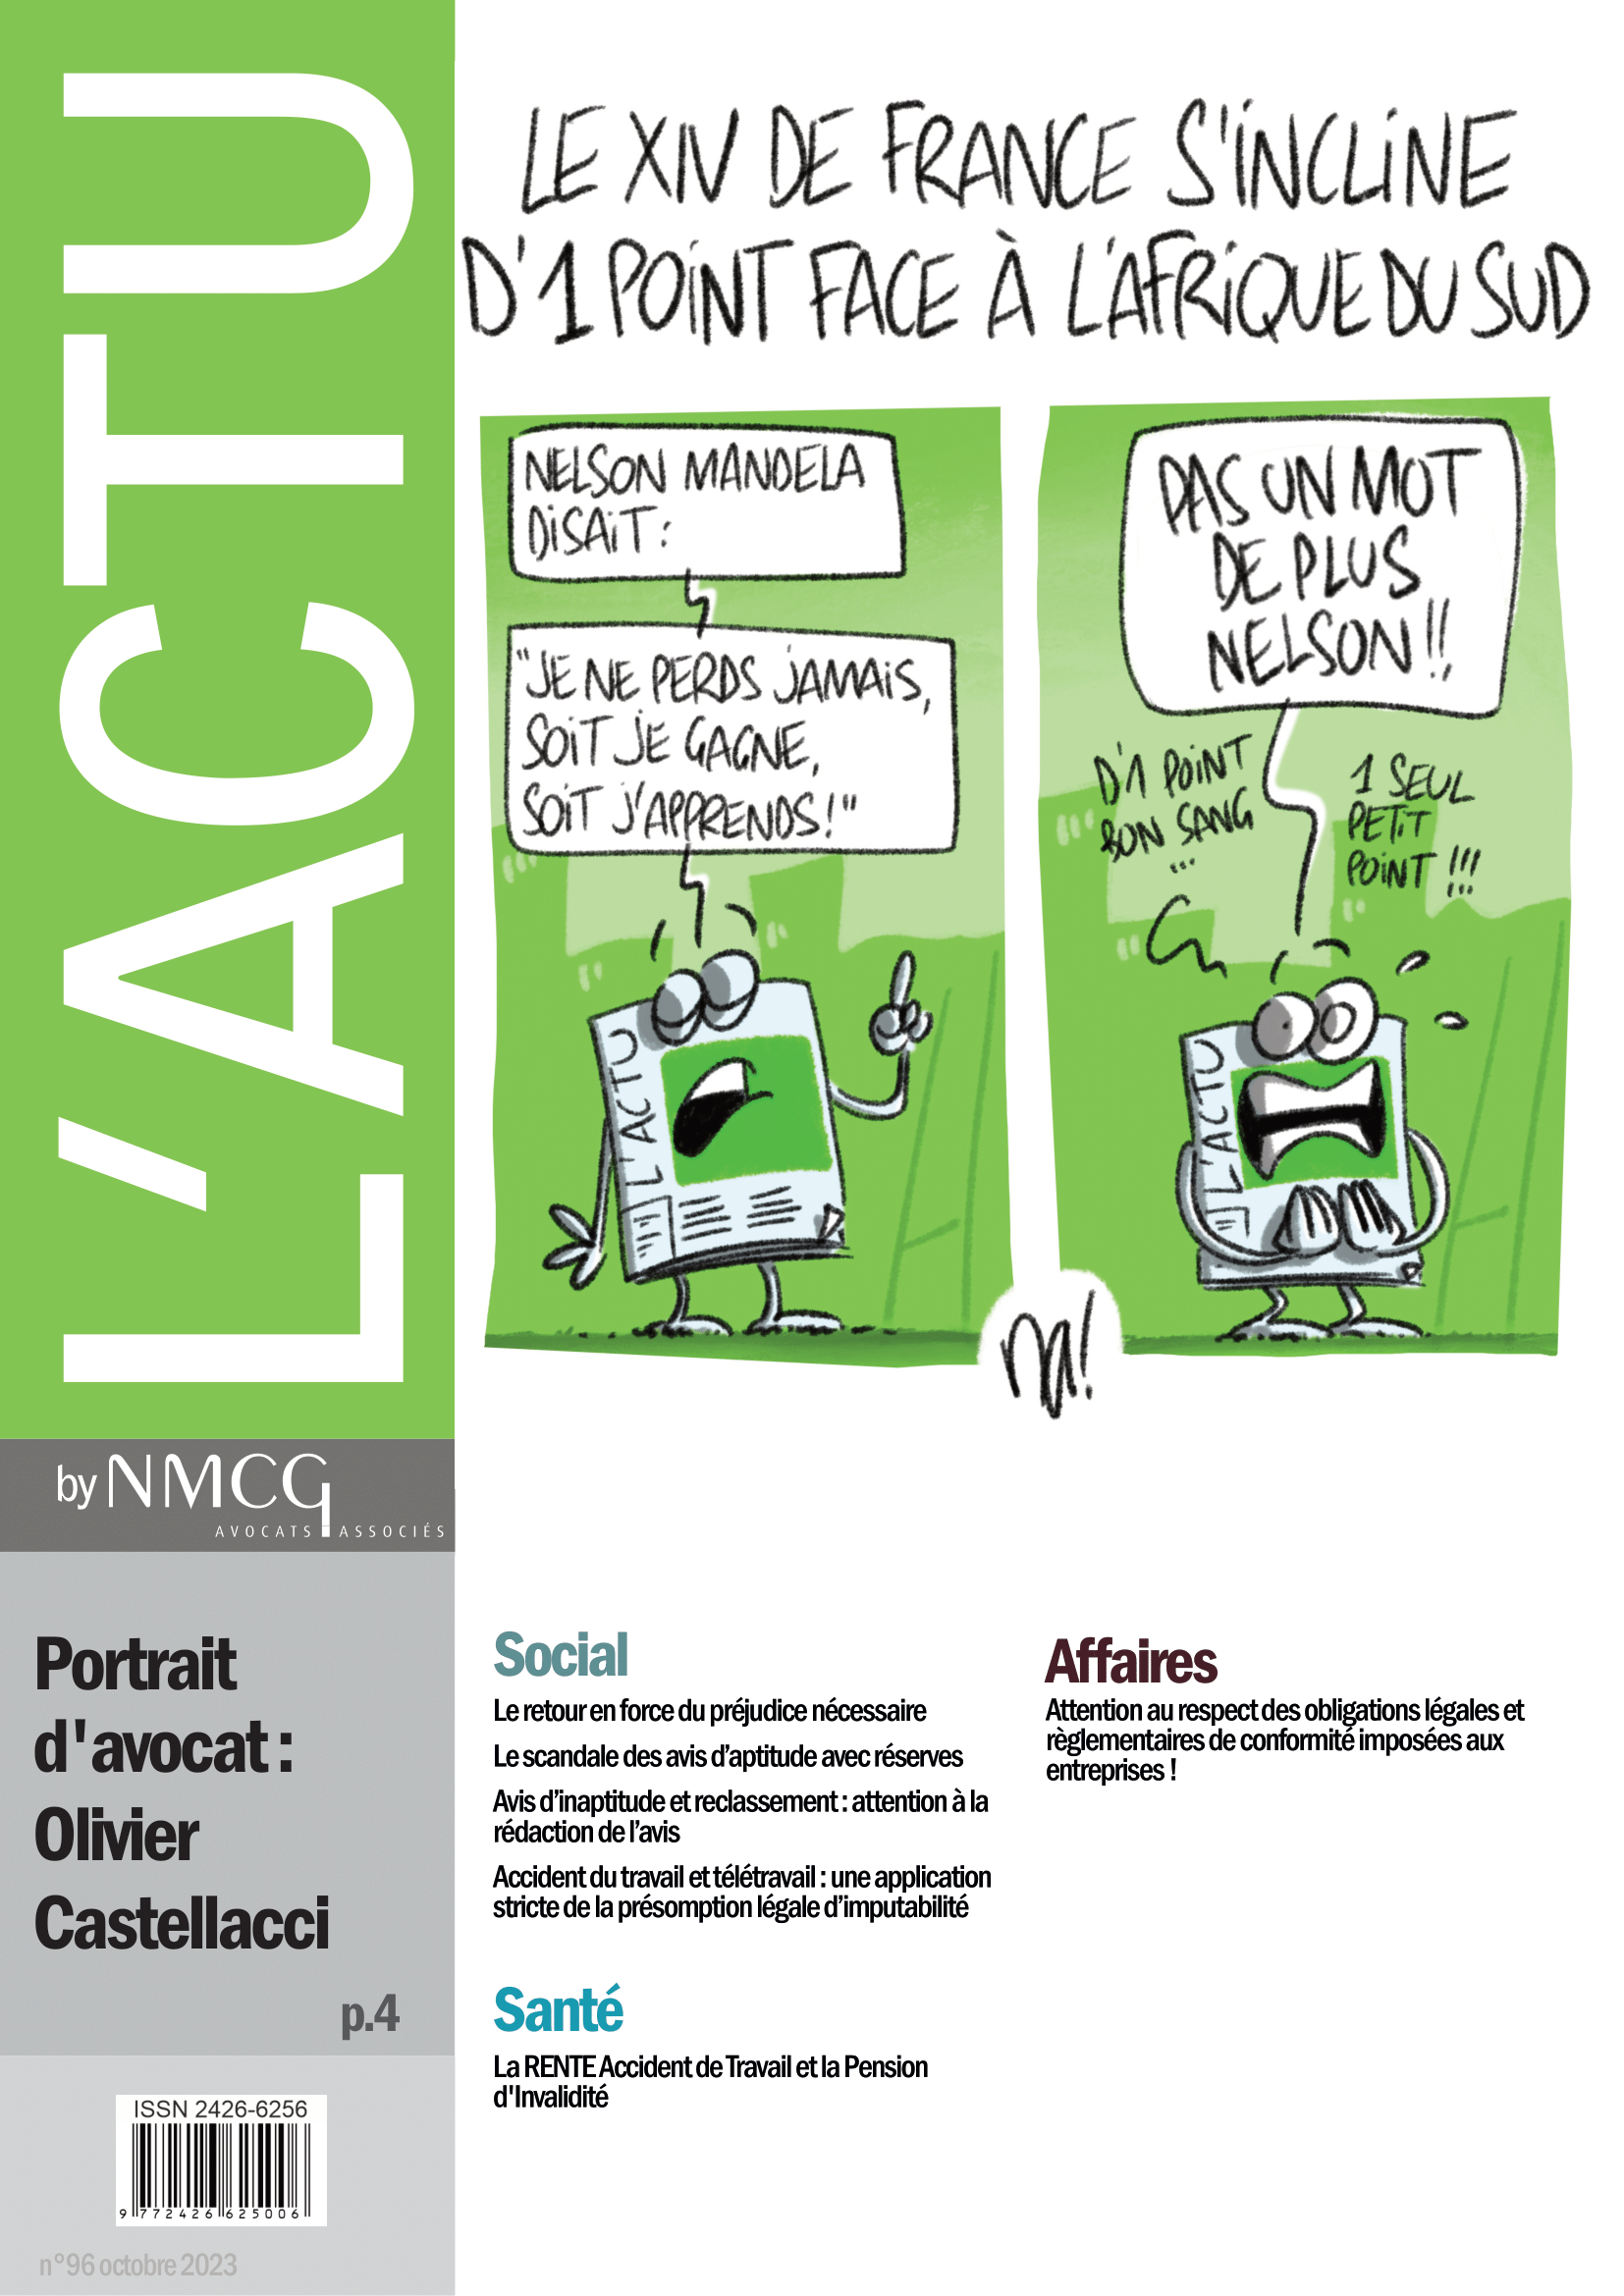 L'Actu by NMCG - Octobre 2023